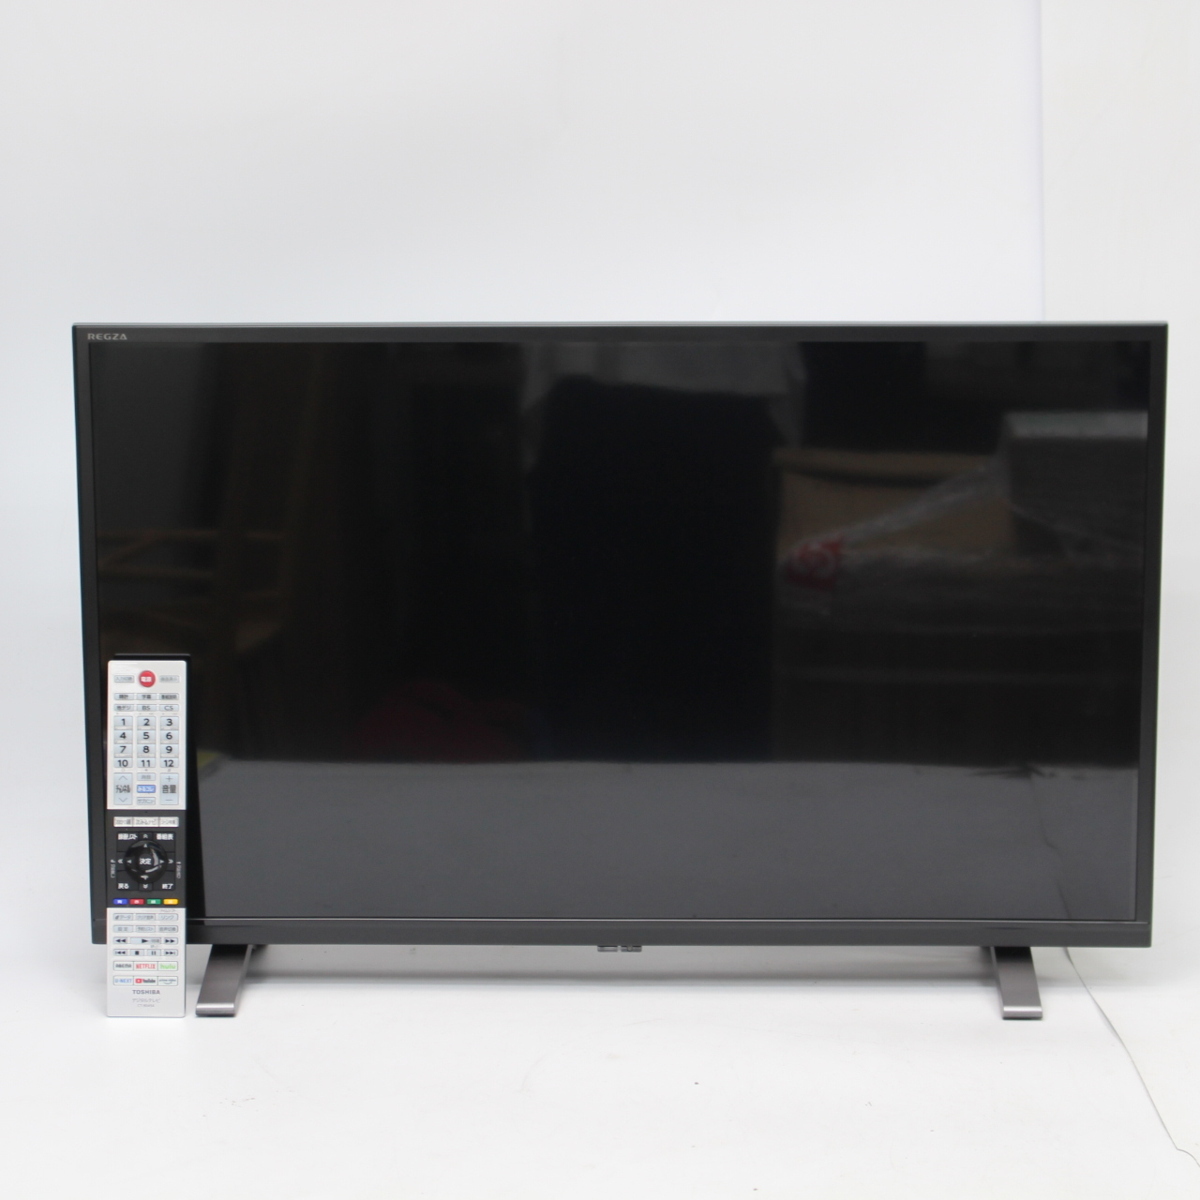 川崎市宮前区にて 東芝 液晶テレビ 32V34 2021年製 を出張買取させて頂きました。